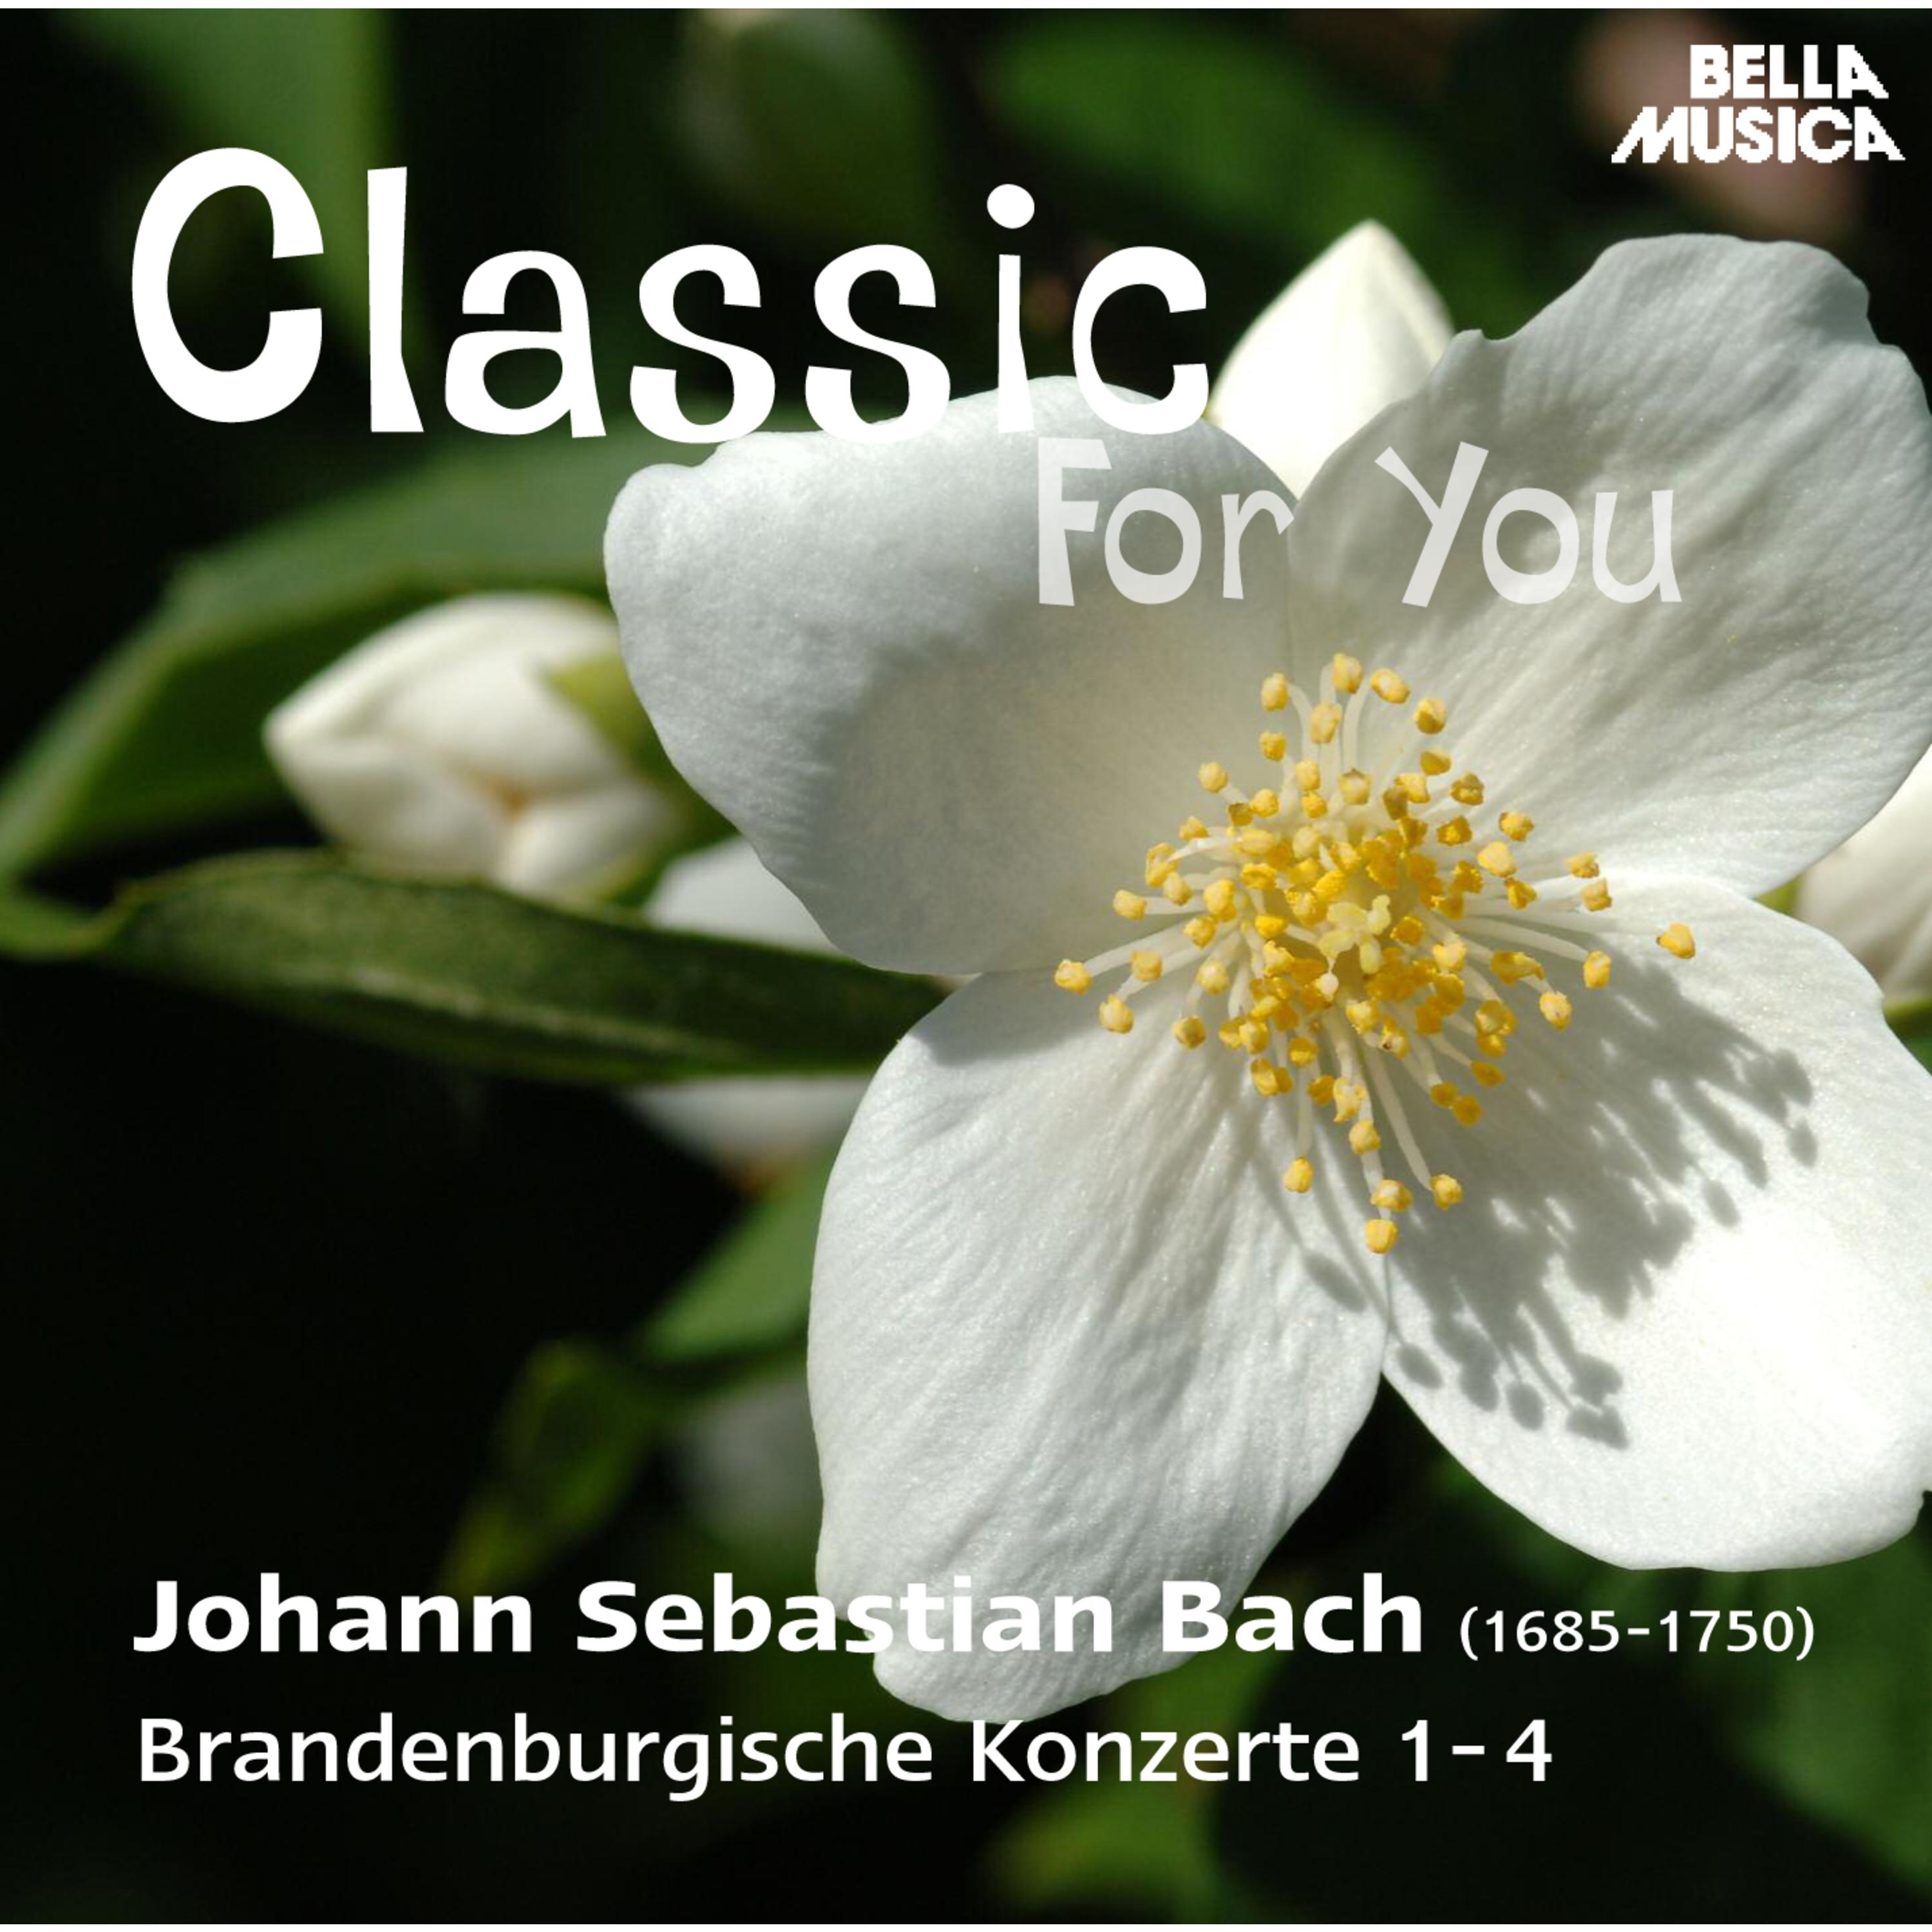 Brandenburgisches Konzert in G Major, BWV 1048, No. 3: I. Allegro moderato